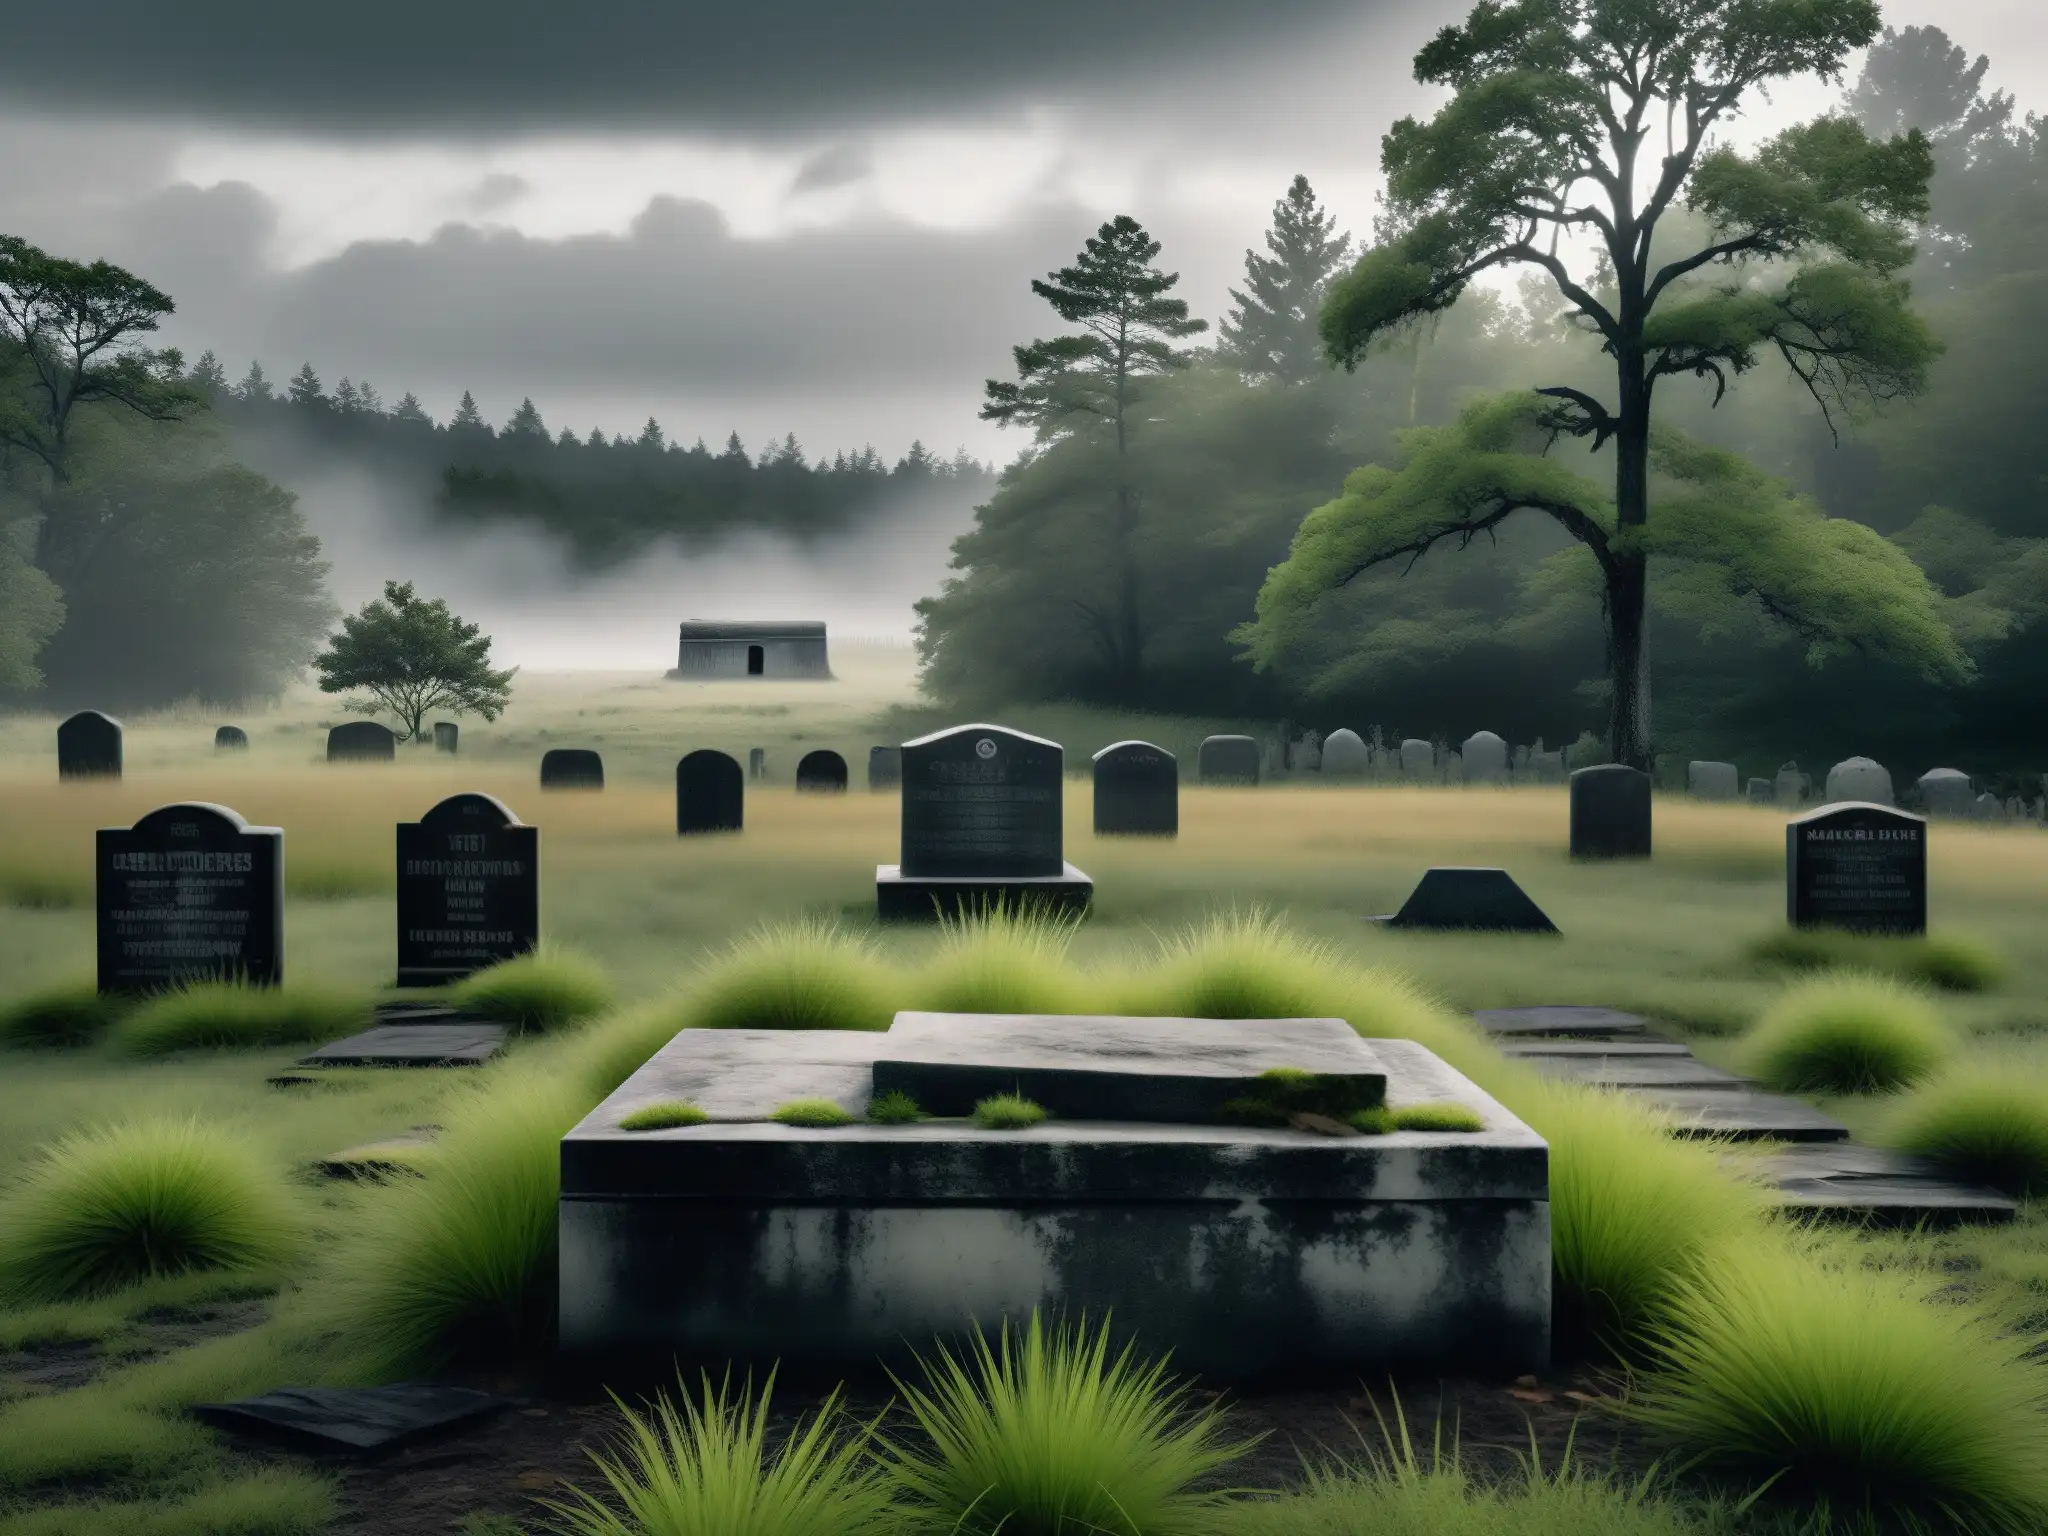 Imagen en blanco y negro de un antiguo cementerio nativo abandonado, con tumbas desgastadas y hierba crecida